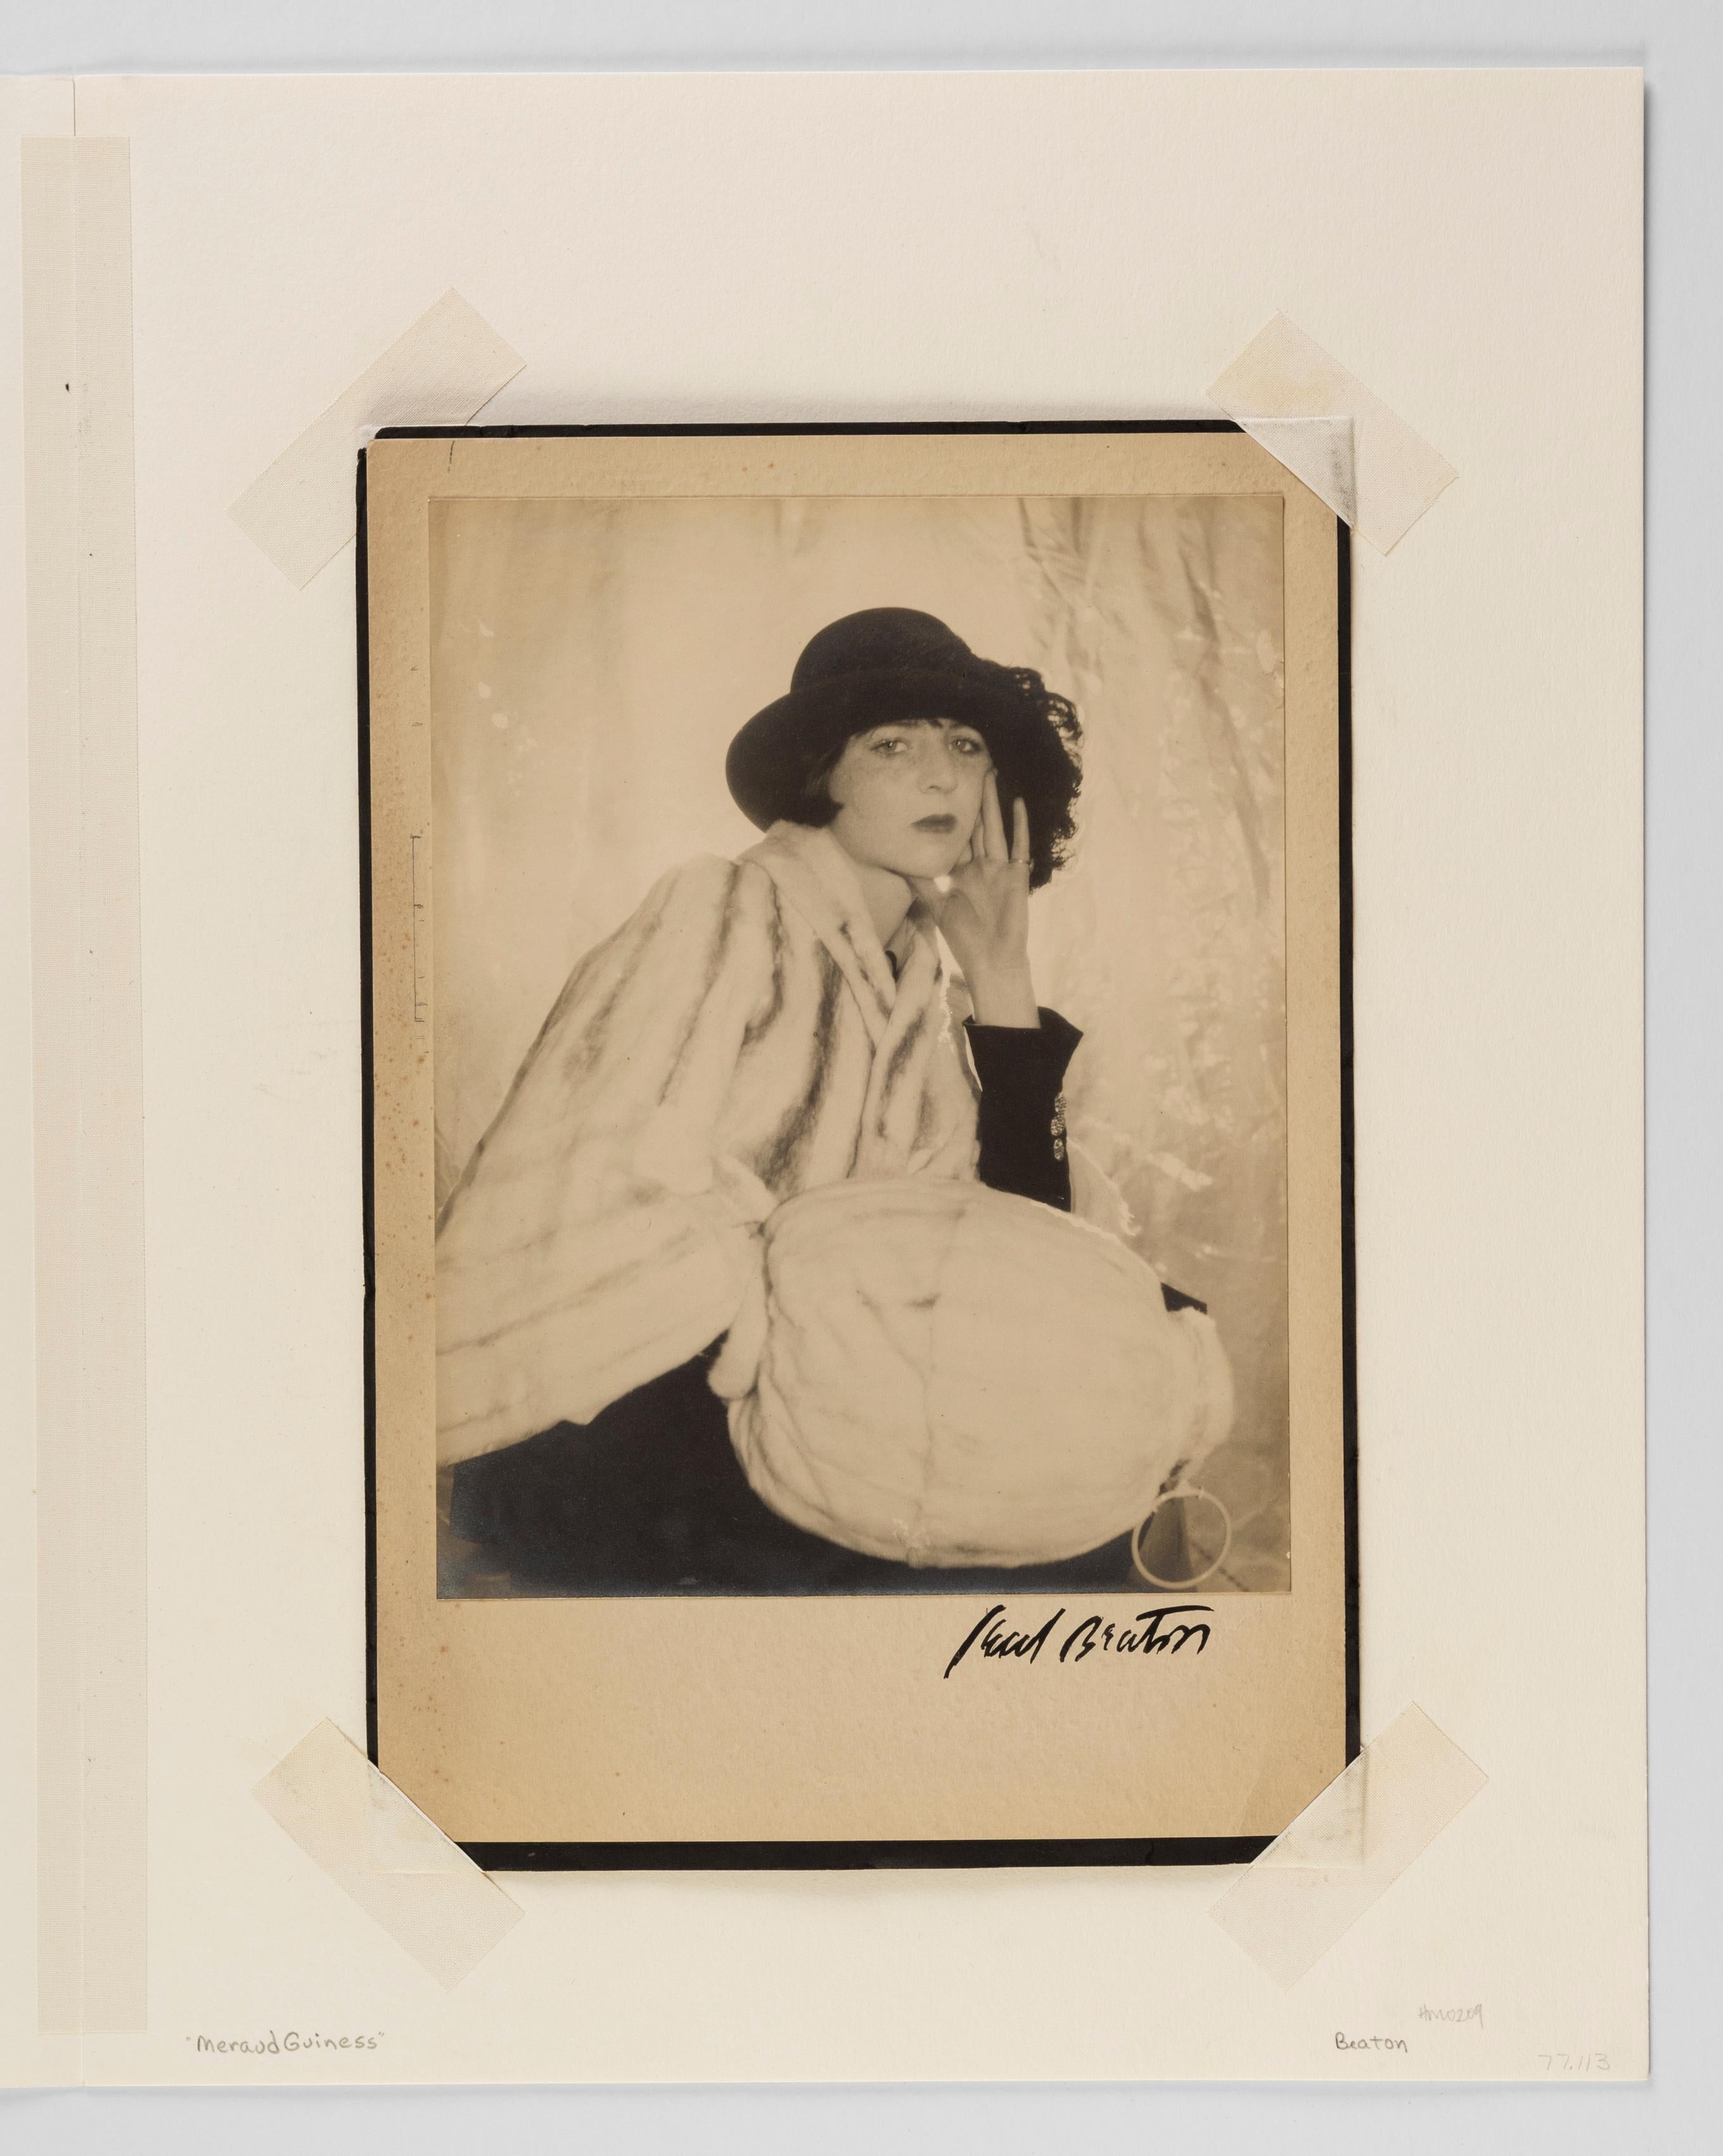 Meraud Guinness, années 1930 - Cecil Beaton (photographie de portrait de mode) en vente 1